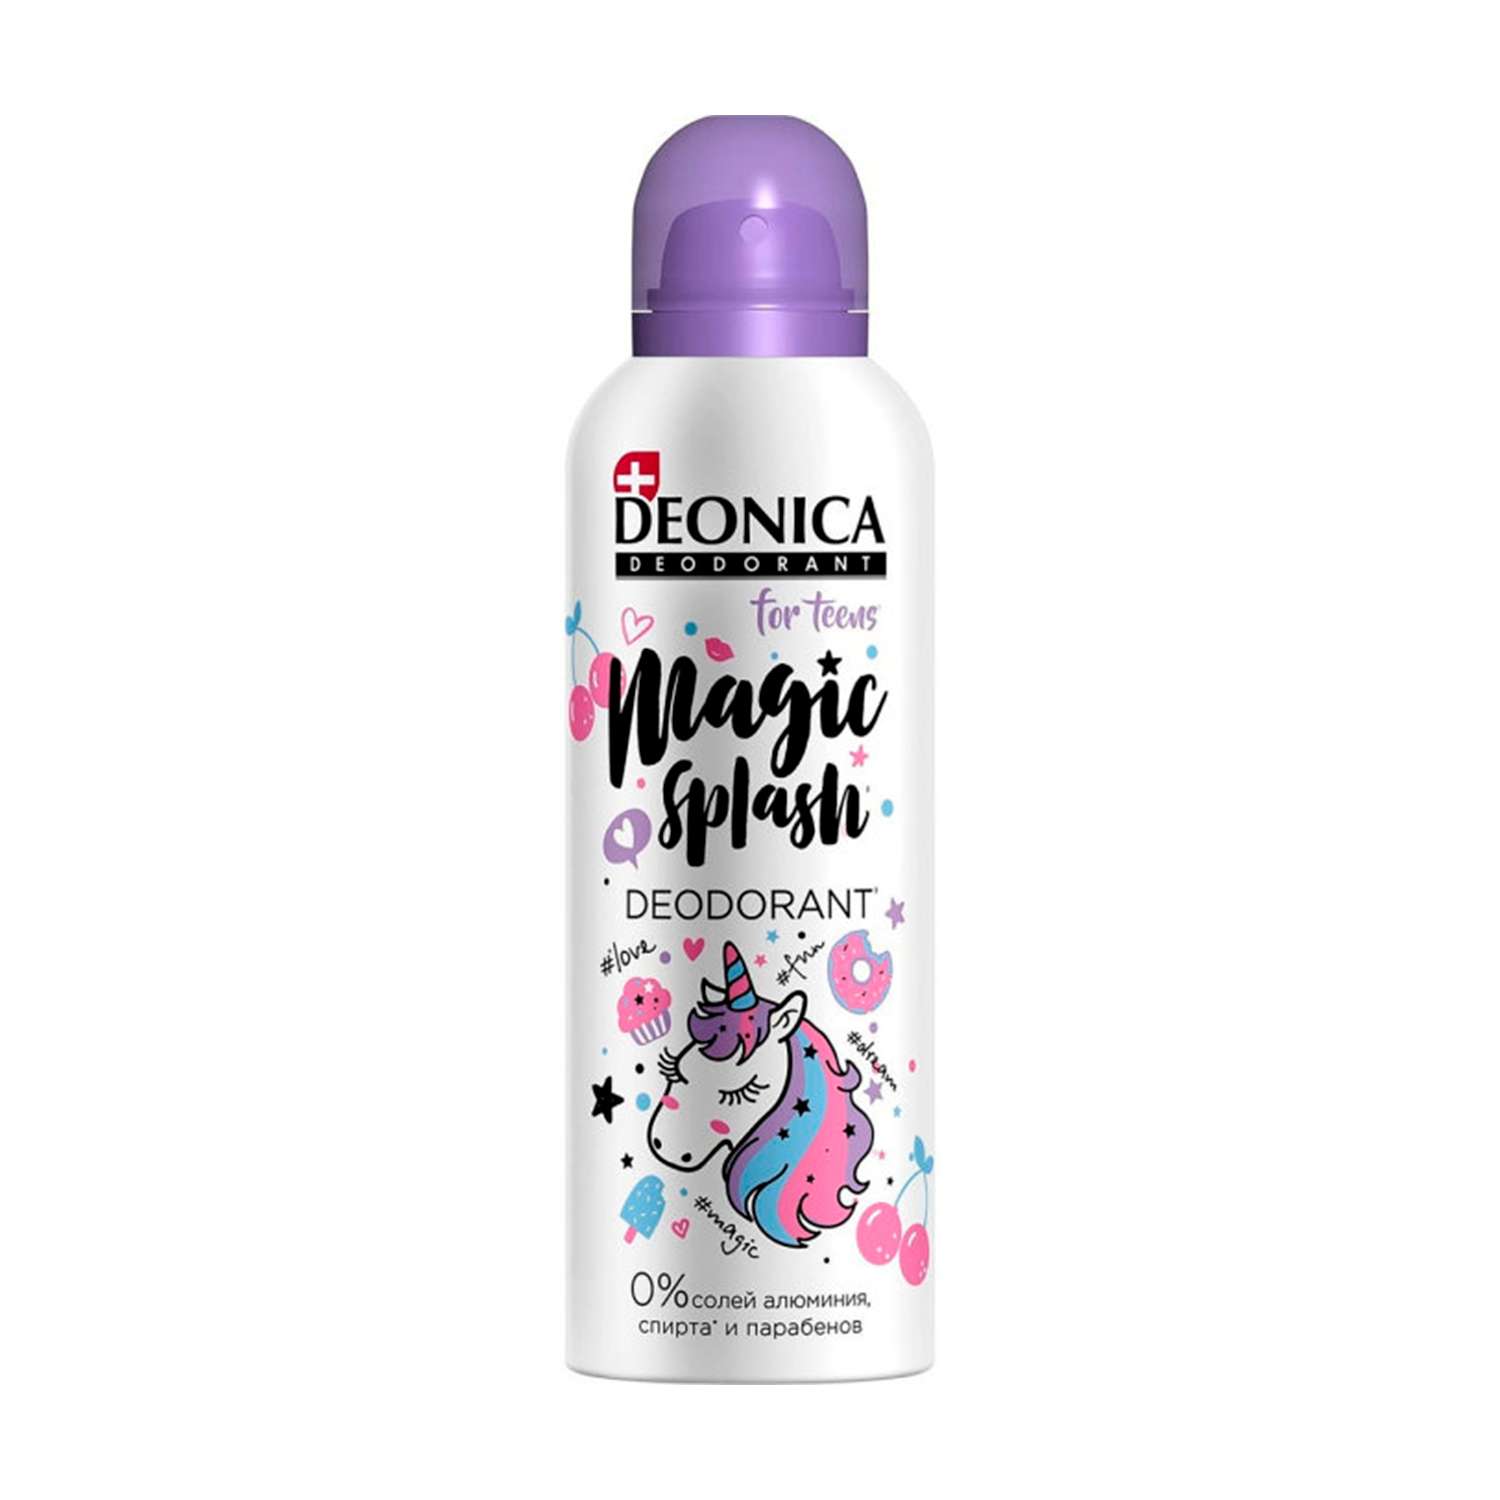 Дезодорант Deonica Magic splash for teens 125 мл - фото 1